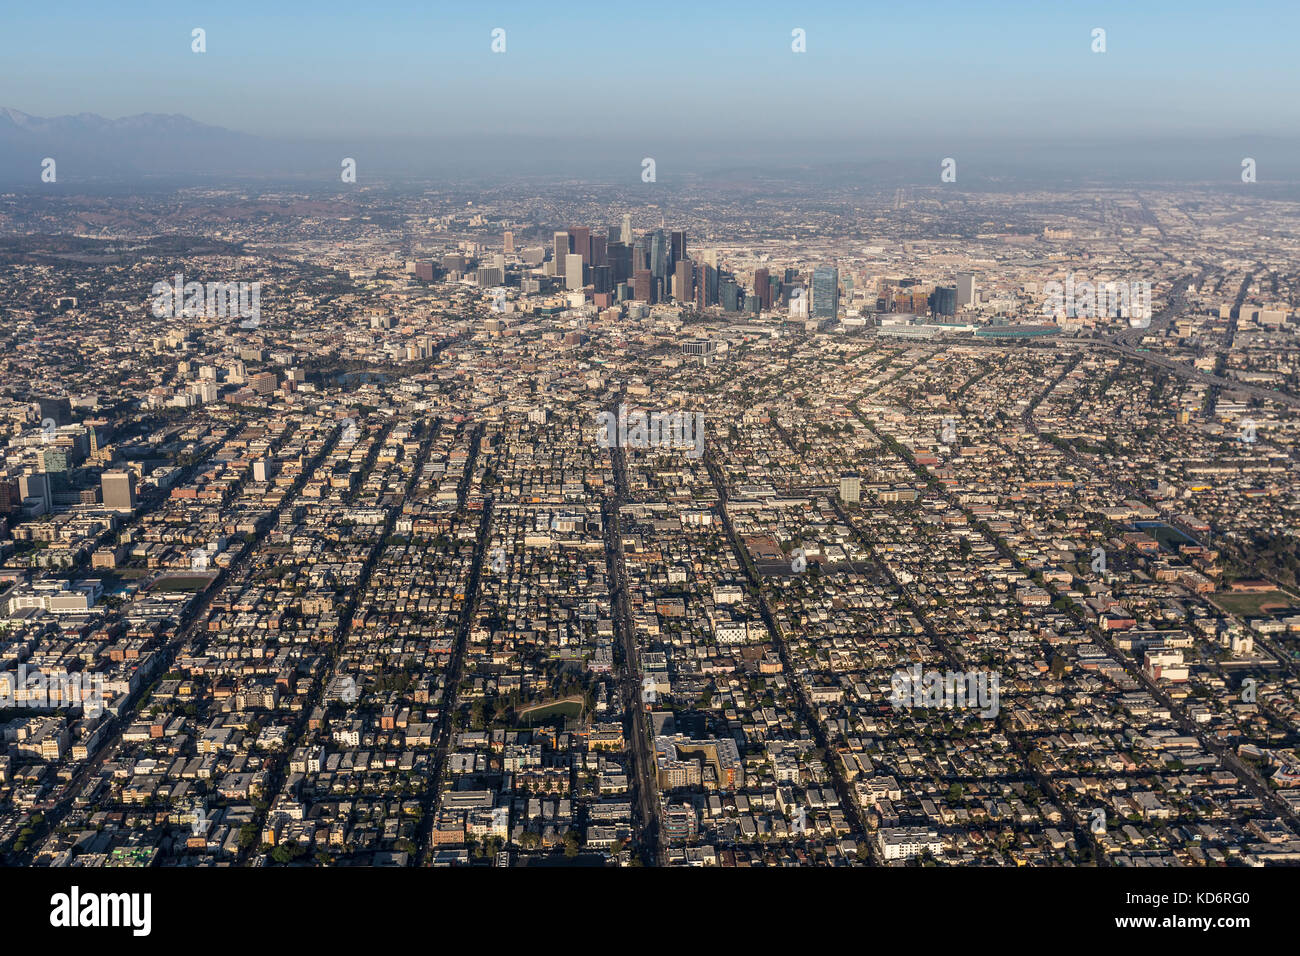 Pomeriggio Vista aerea di strade urbane e gli edifici ad ovest del centro cittadino di Los Angeles in California del Sud. Foto Stock